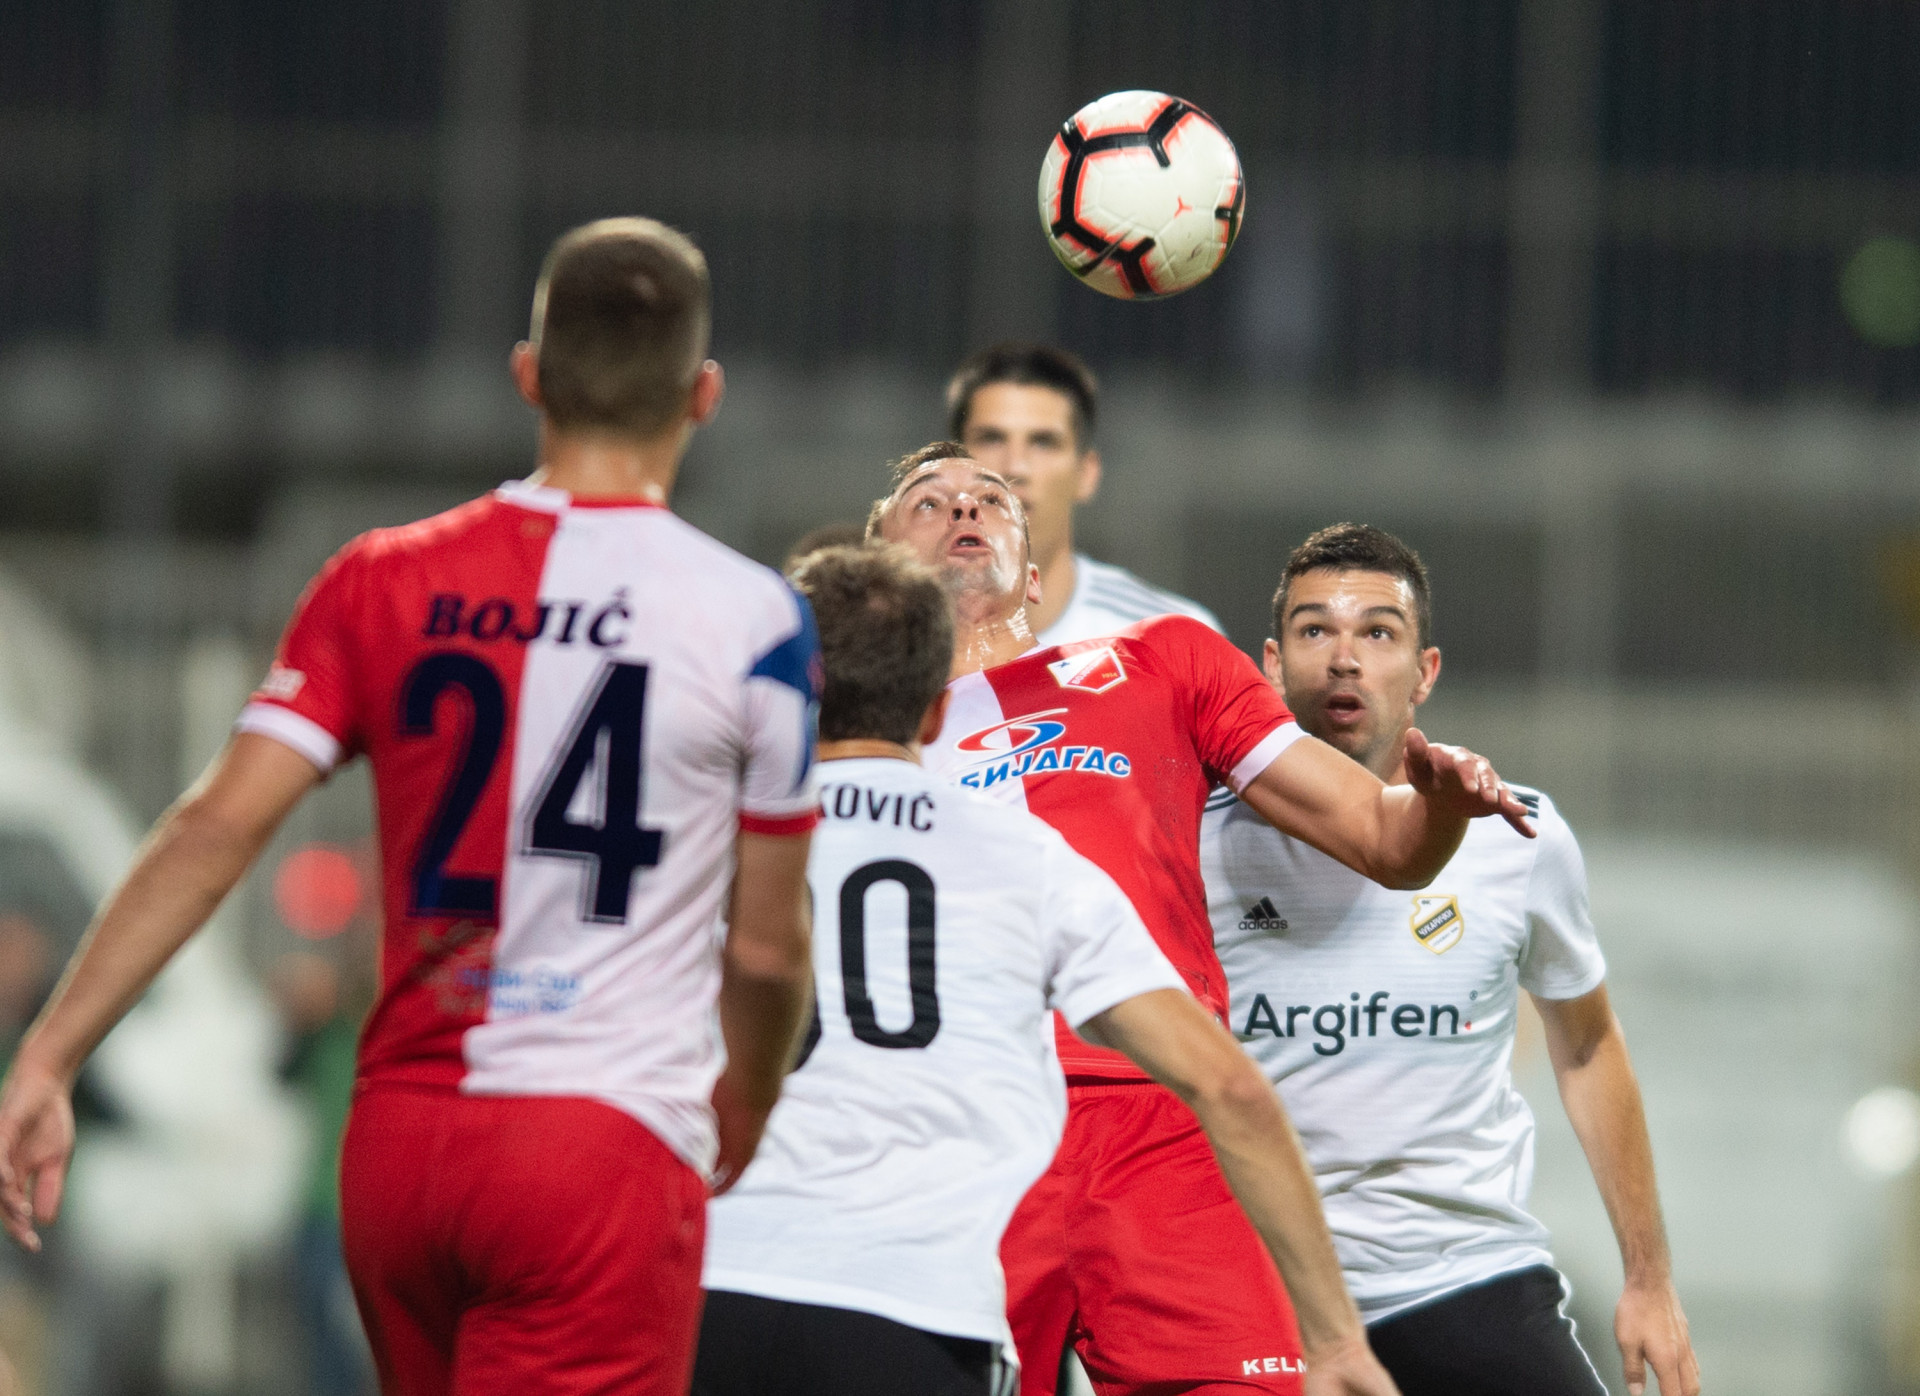 Čukarički - Vojvodina 0:0 - Luka Stojanović | FkCukaricki